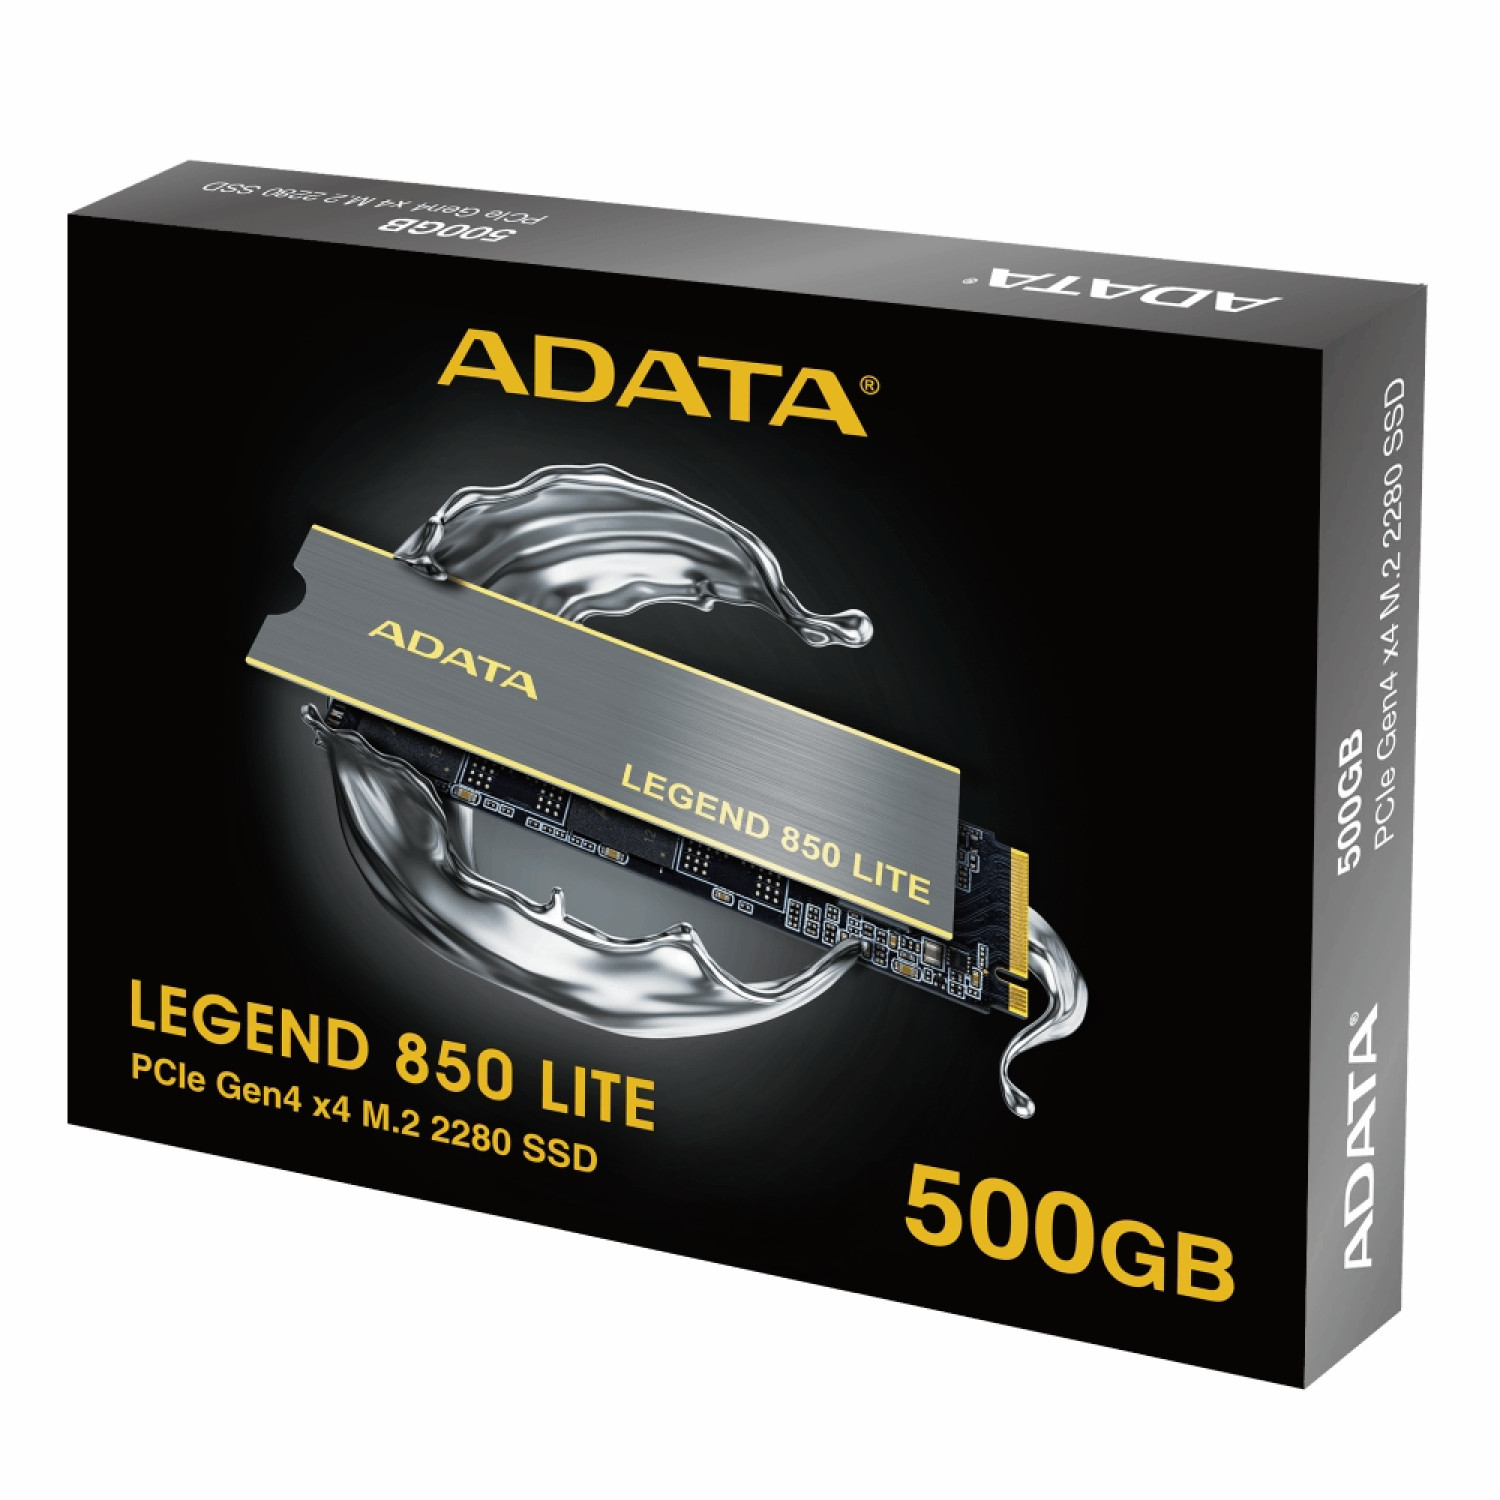 حافظه اس اس دی ADATA Legend 850 Lite 500GB - for PS5-8